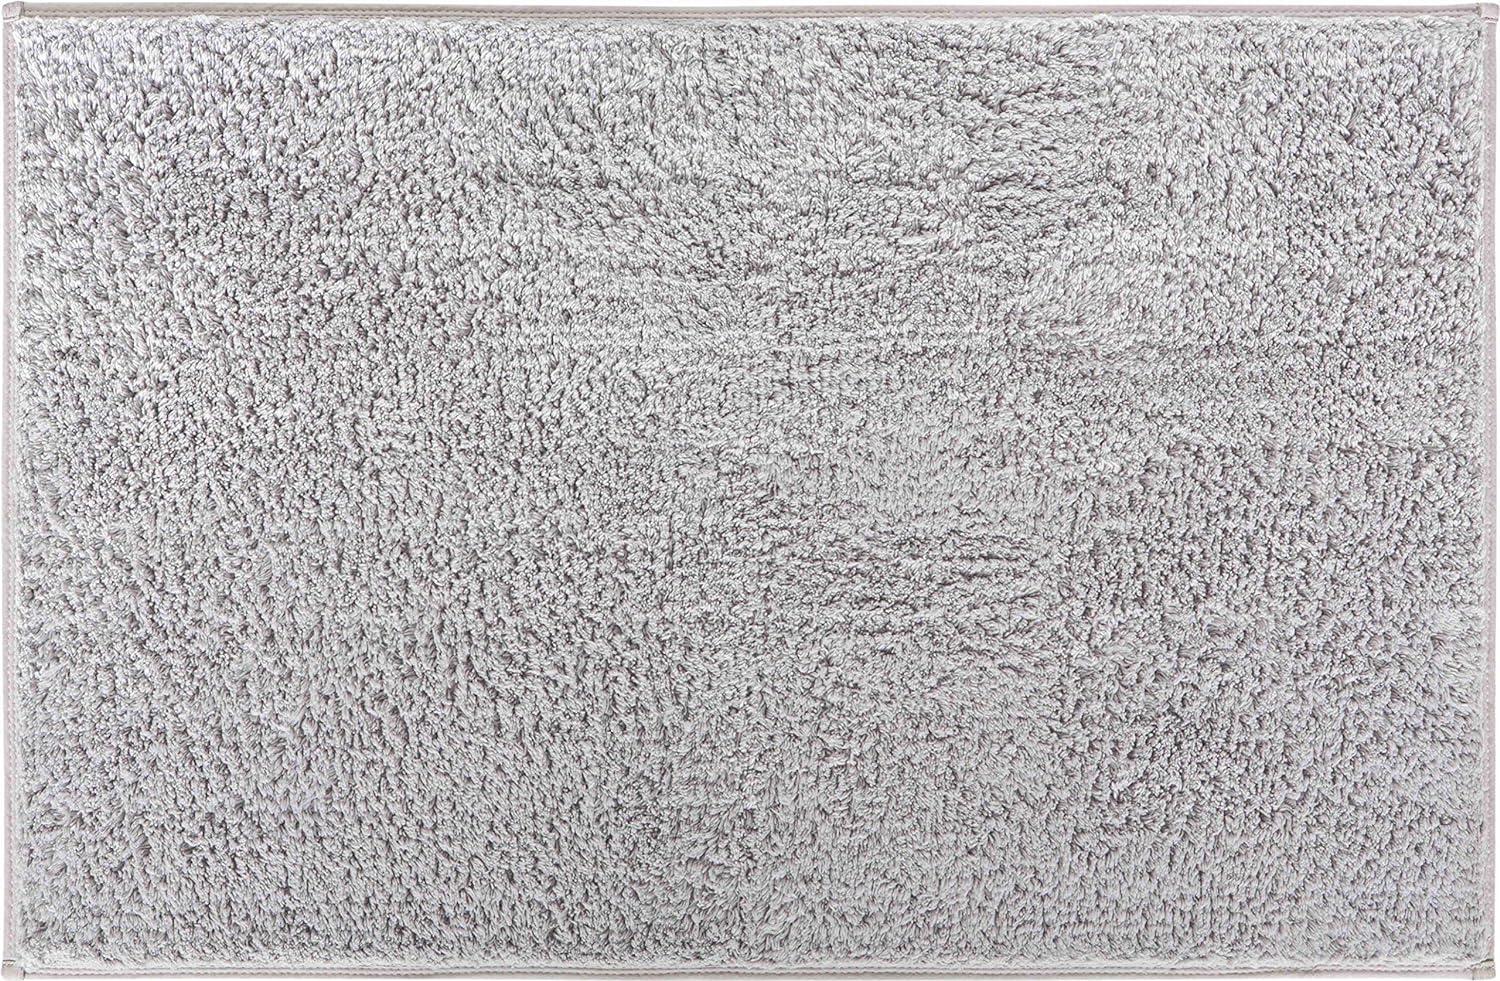 Grund Marla Badteppich, Baumwolle, Grau, 60x90 cm Bild 1